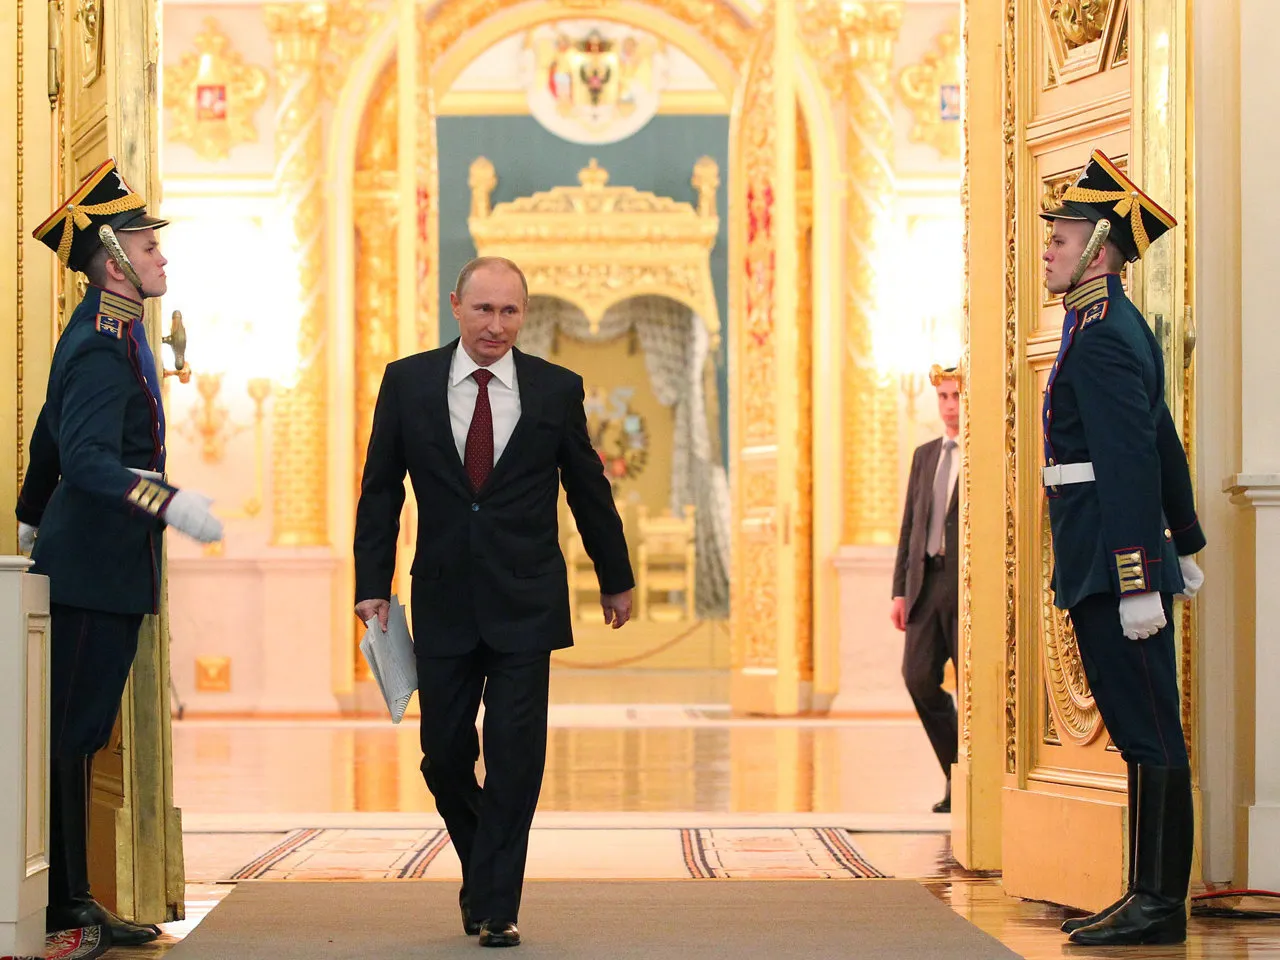 
											
											Putin 30-sentyabr kuni yangi hududlarni Rossiya tarkibiga kiritish to'g'risidagi shartnomalar imzolaydi
											
											